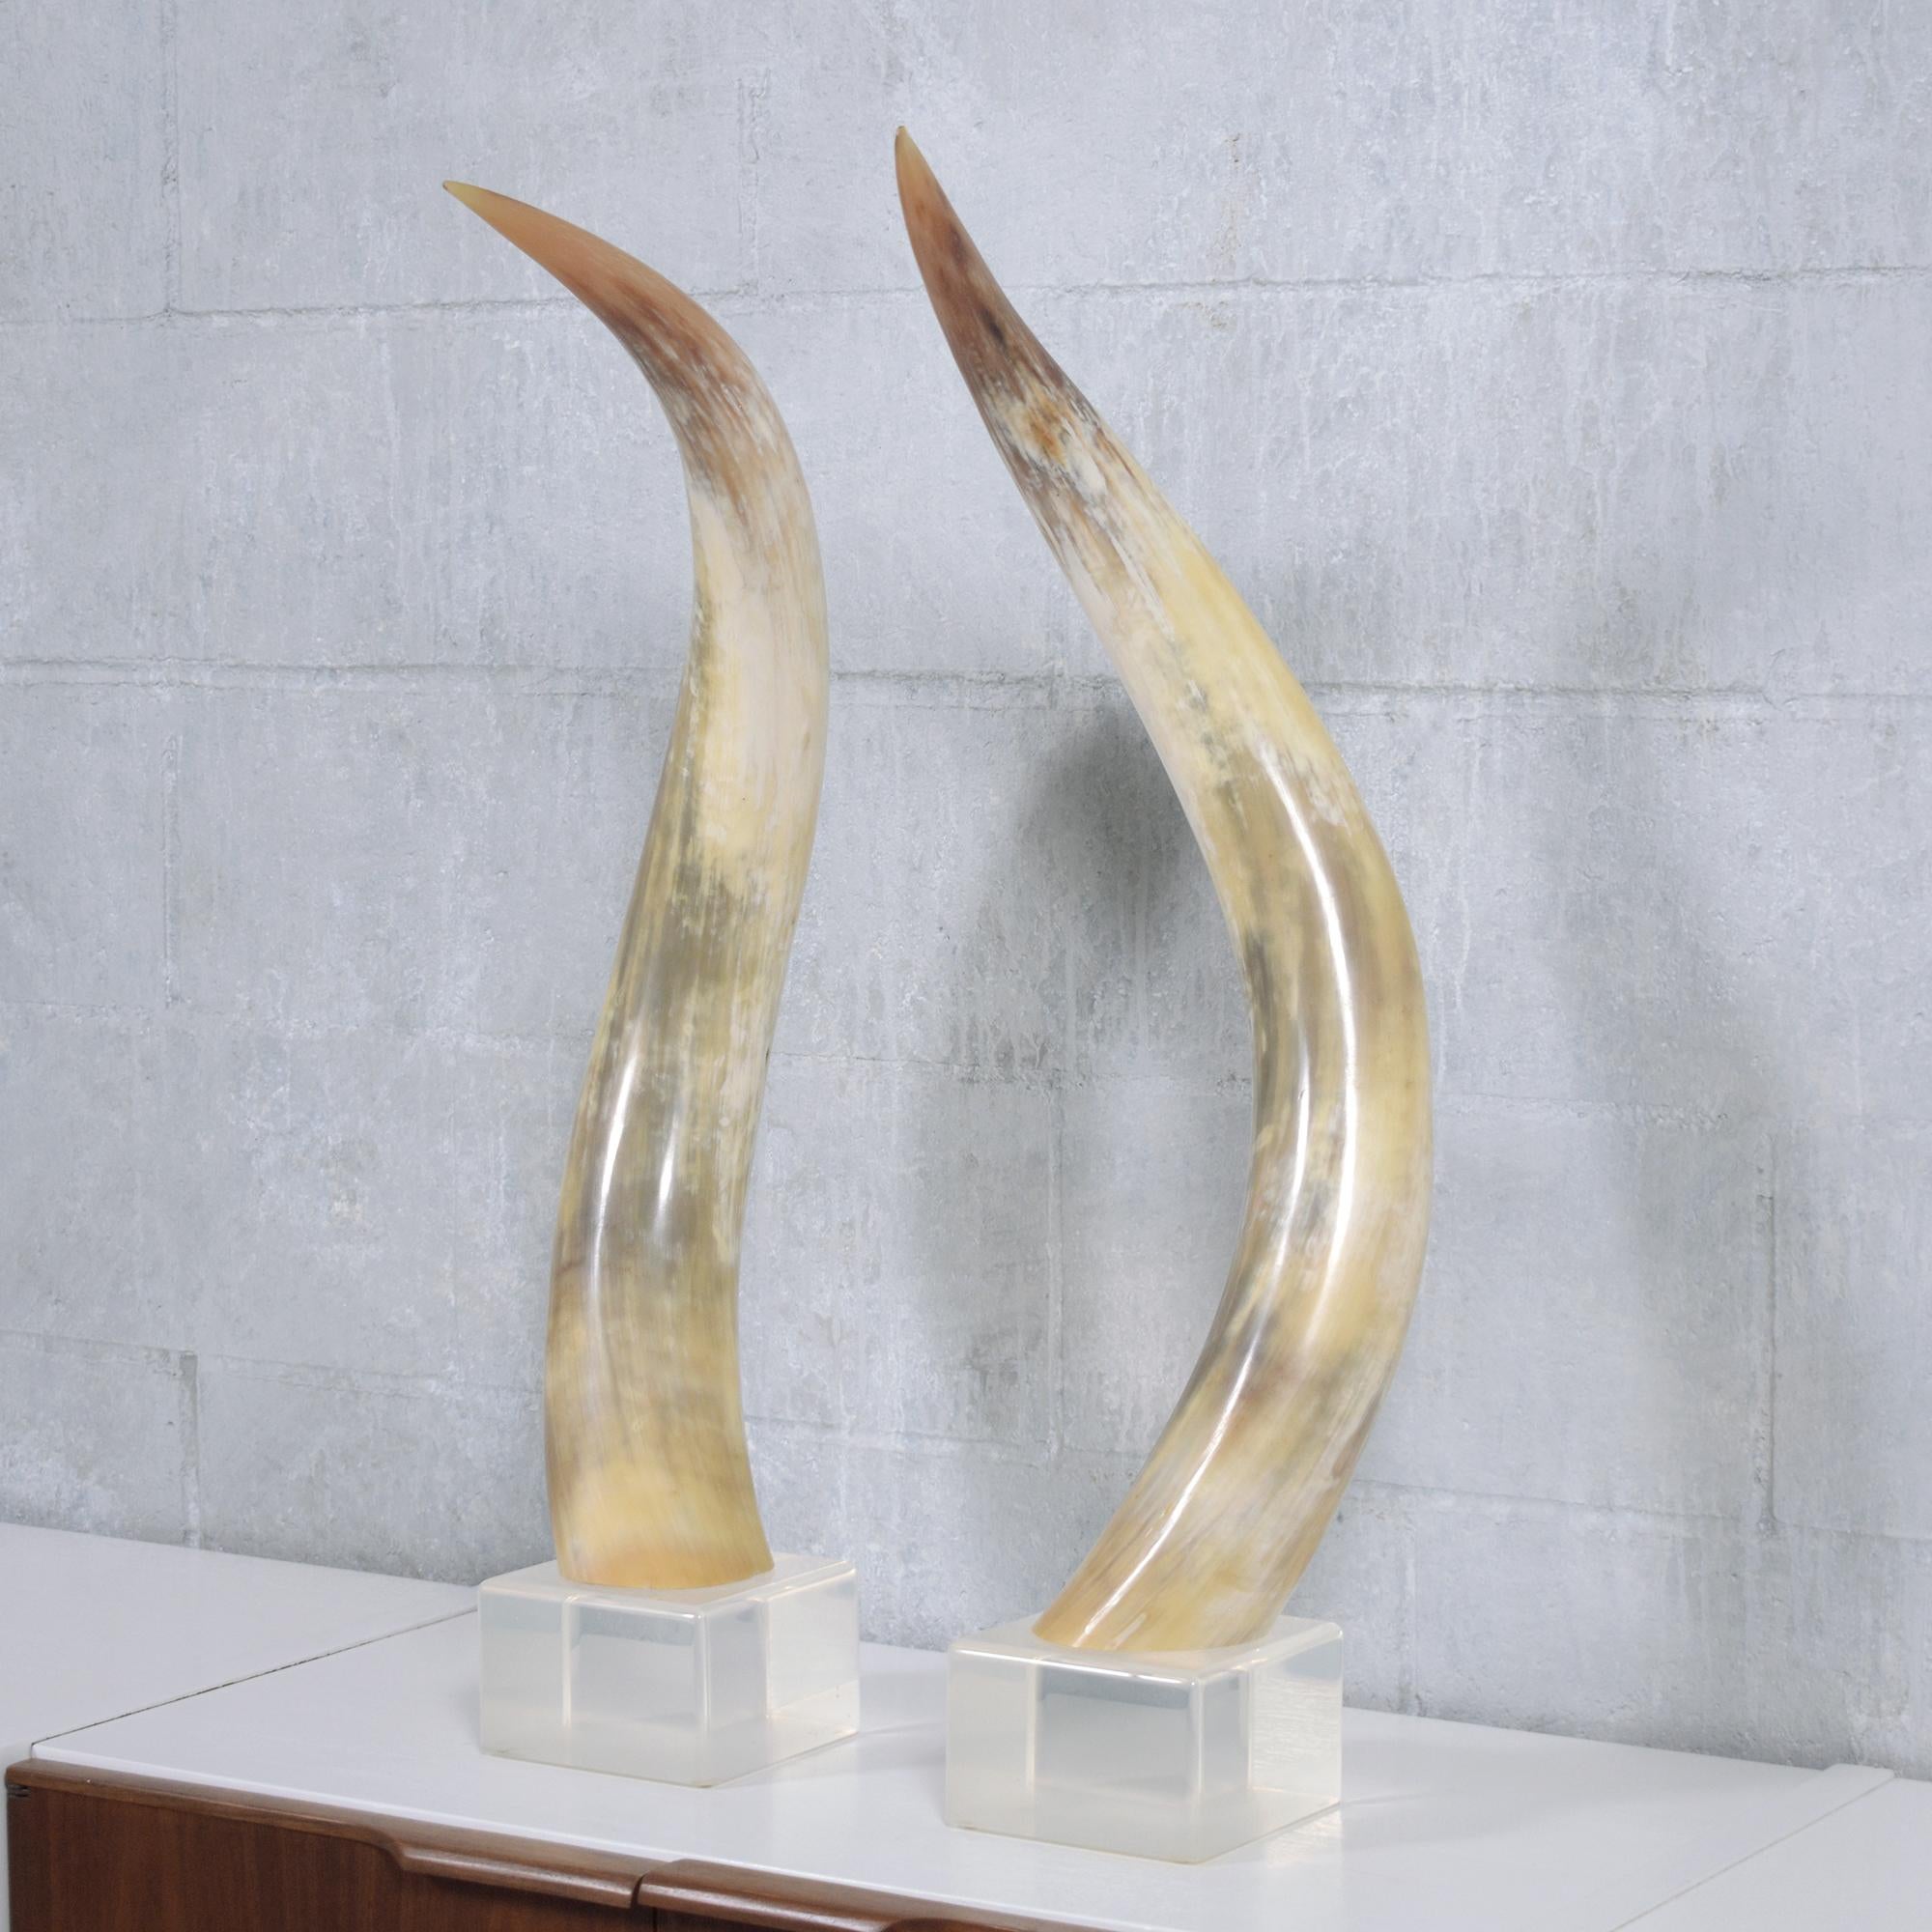 Peppen Sie Ihre Einrichtung mit diesem schicken Paar montierter Horn-Skulpturen auf, die jeweils auf einem runden Holzsockel stehen. Diese exquisiten Sockel sind mit einem raffinierten Schildpattmuster handbemalt und mit geschmackvollen vergoldeten